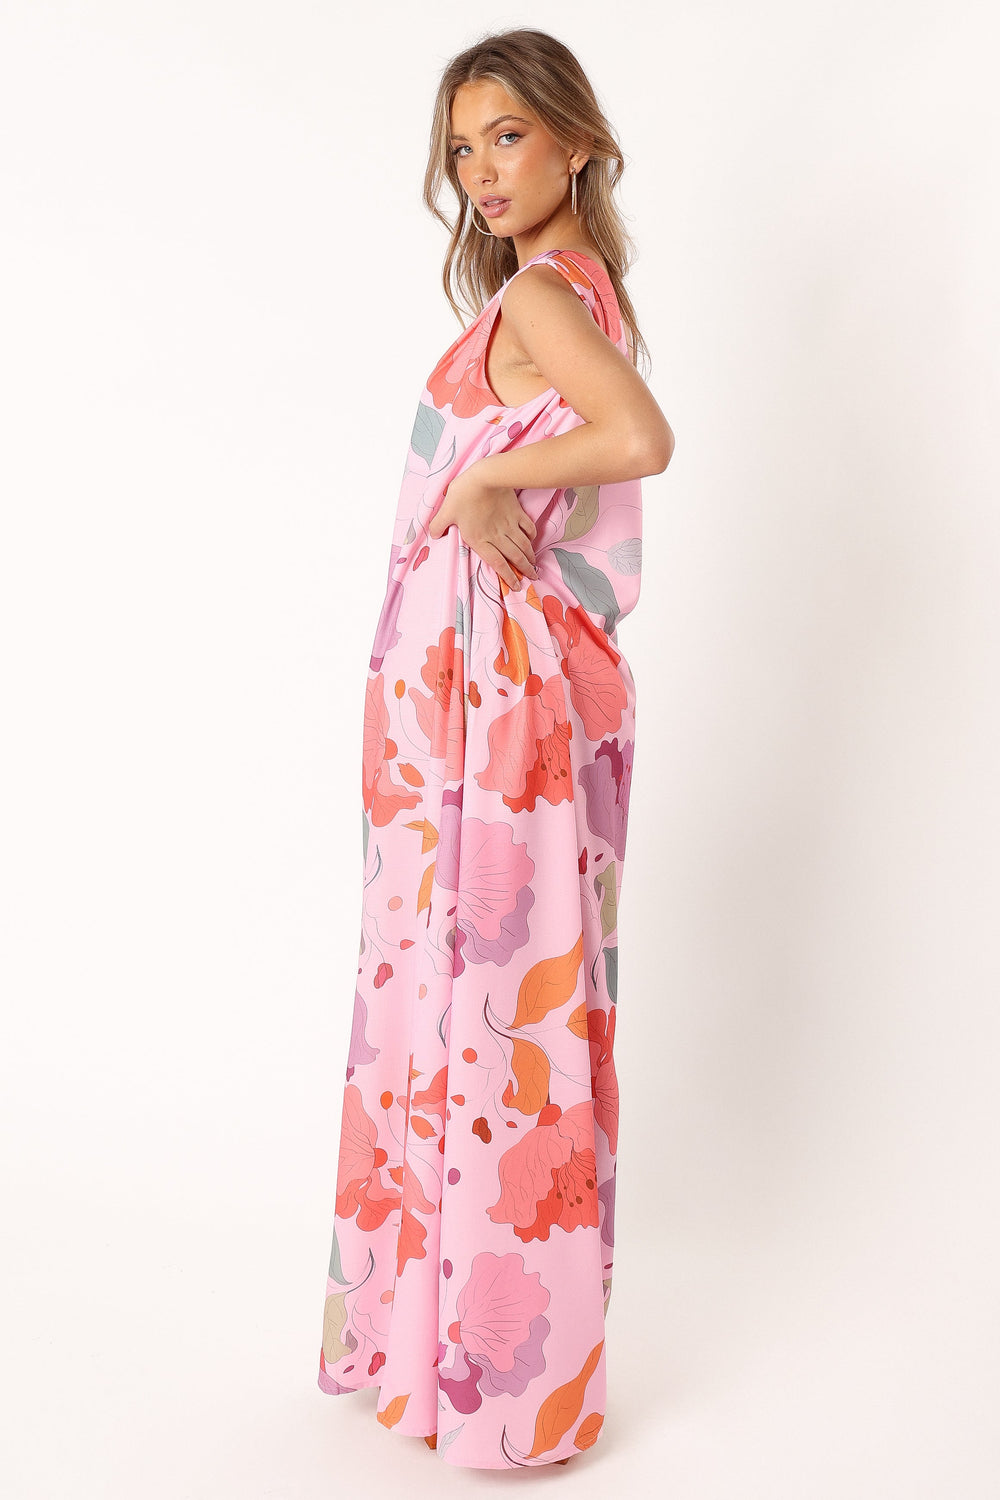 DRESSES @Tillie One Shoulder Maxi Dress - Pink Floral